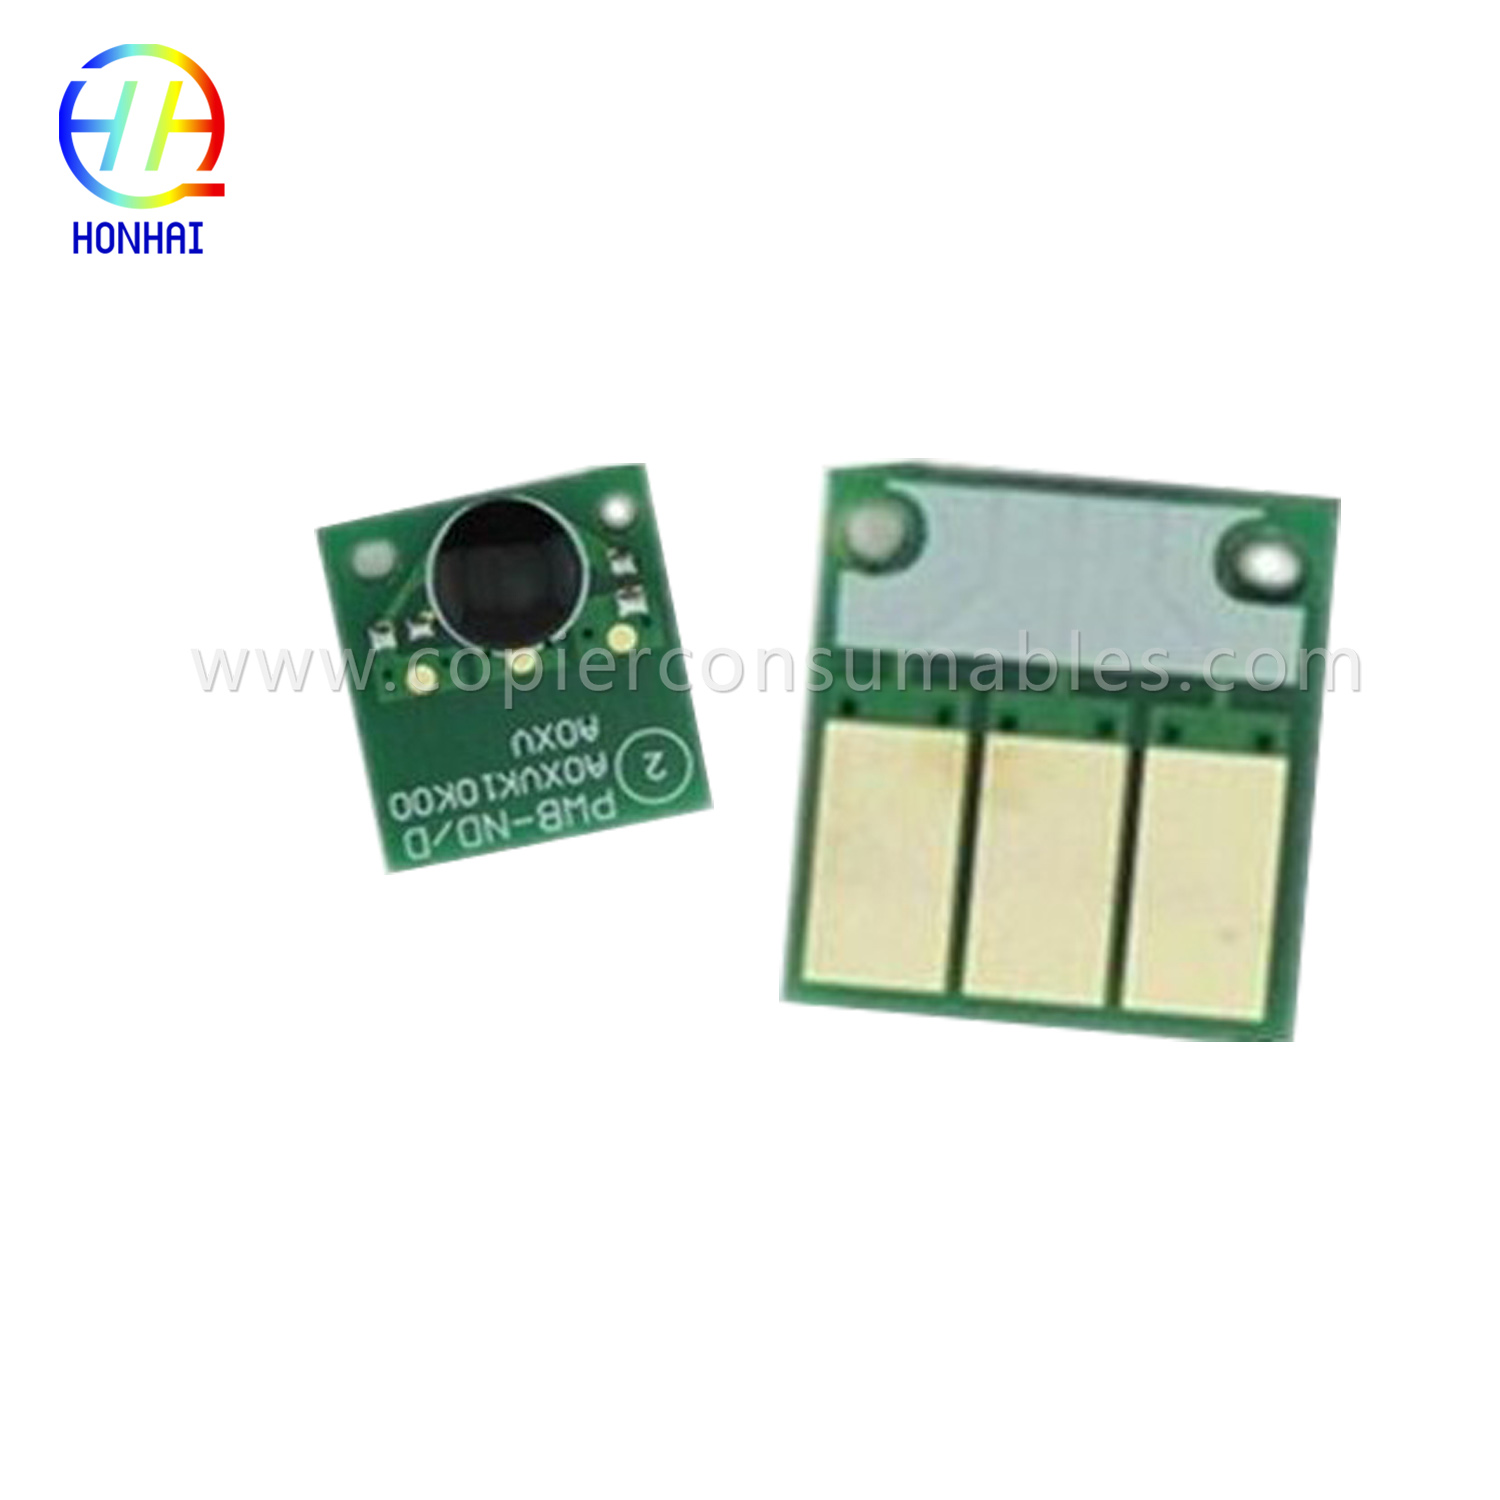 Konica Minolta C220 C280 C360-д зориулсан хорны хайрцагны чип.jpg-1 拷贝